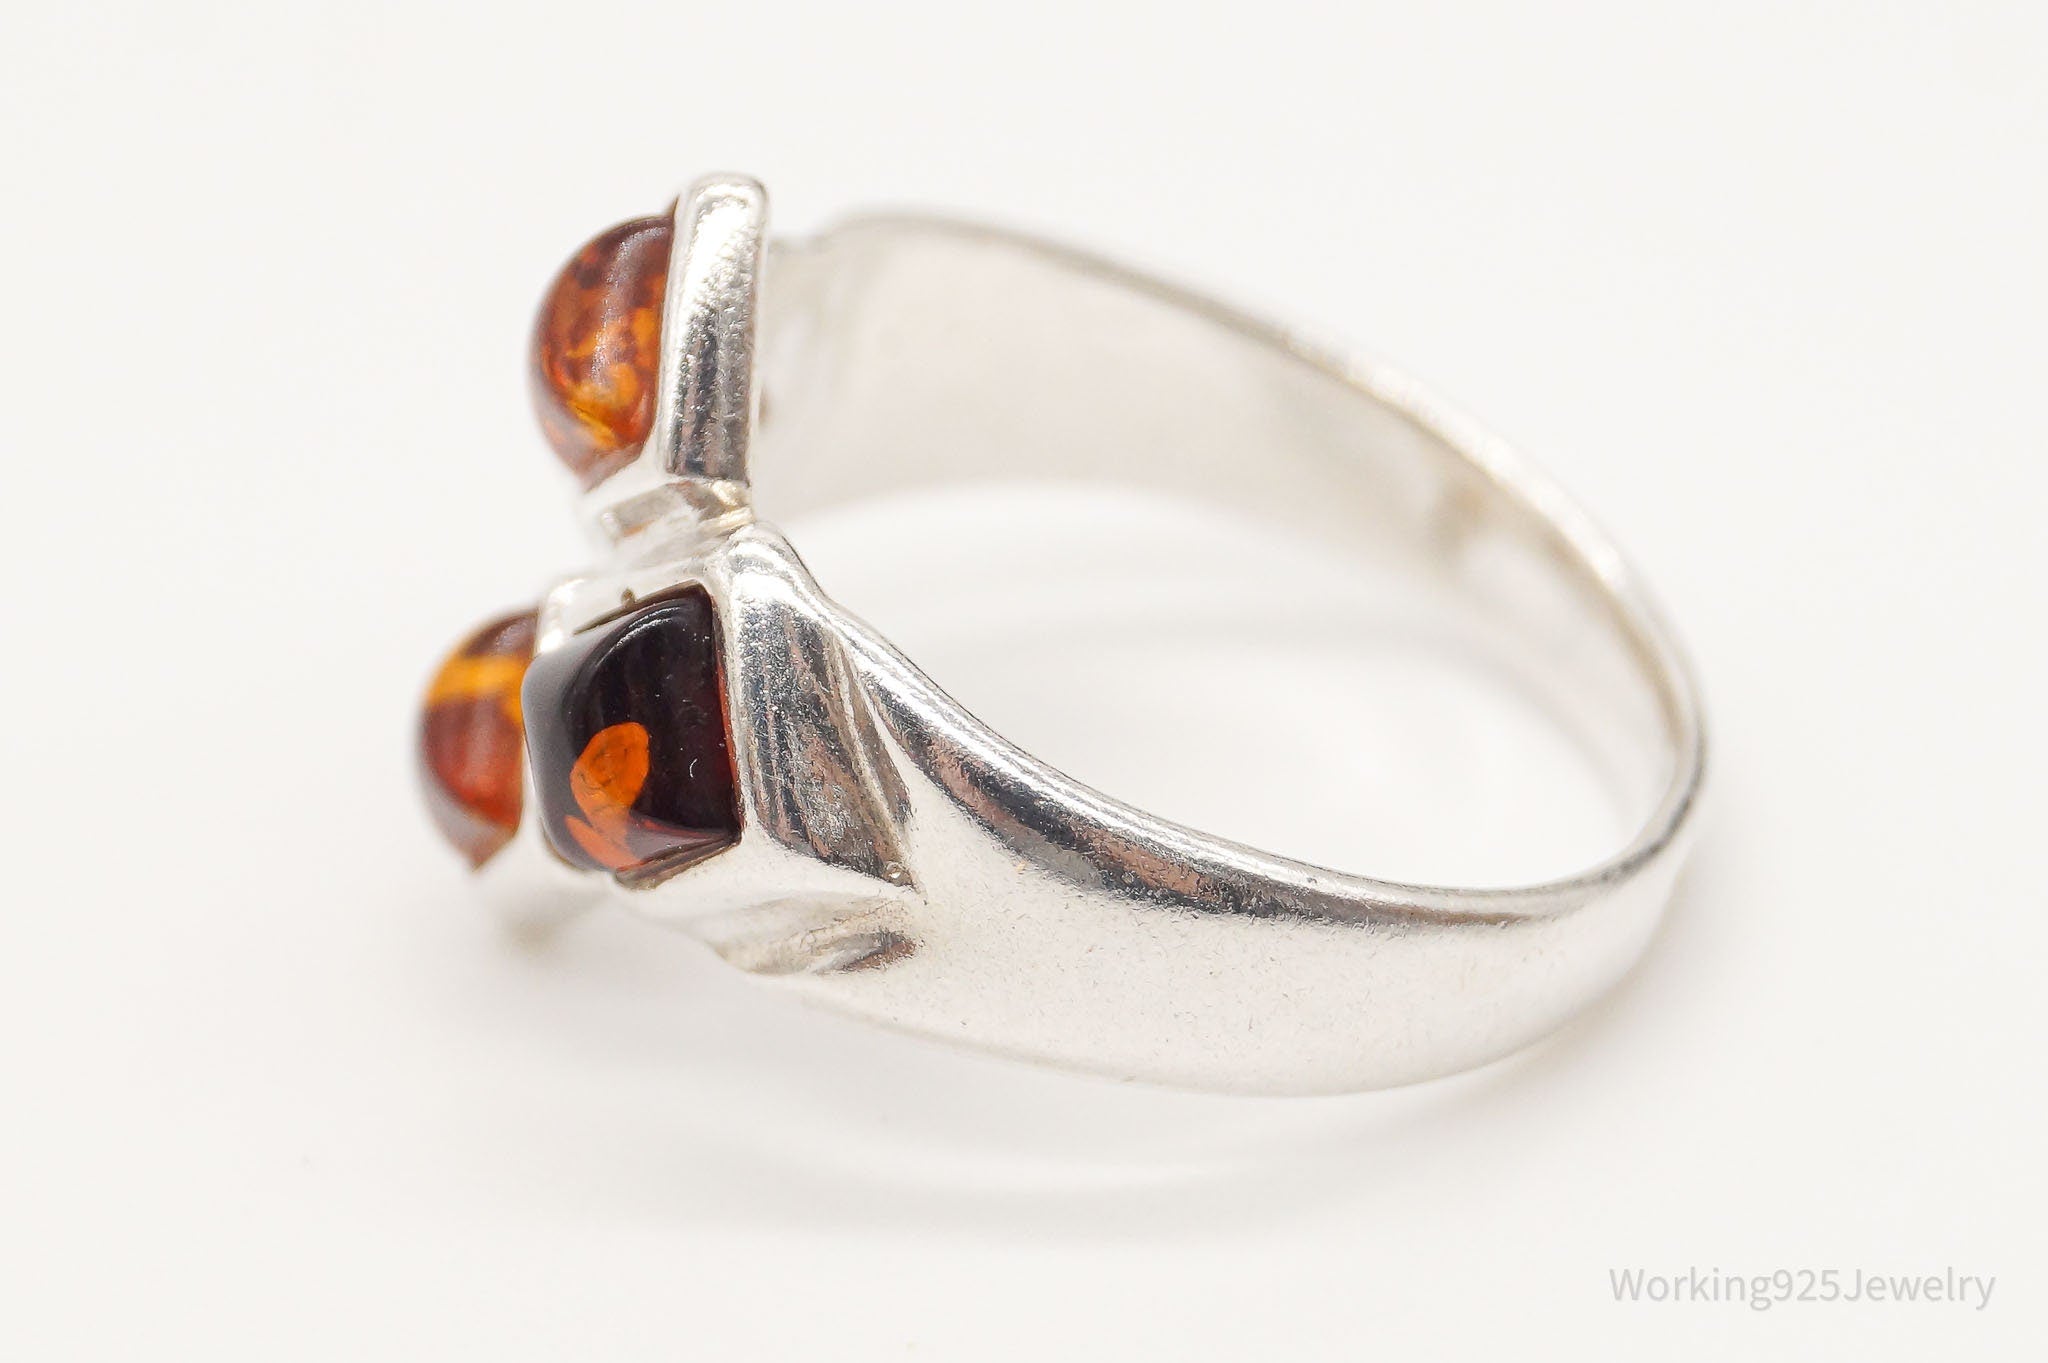 Vintage Modernist Amber Sterling Silver Ring - Size 6.5